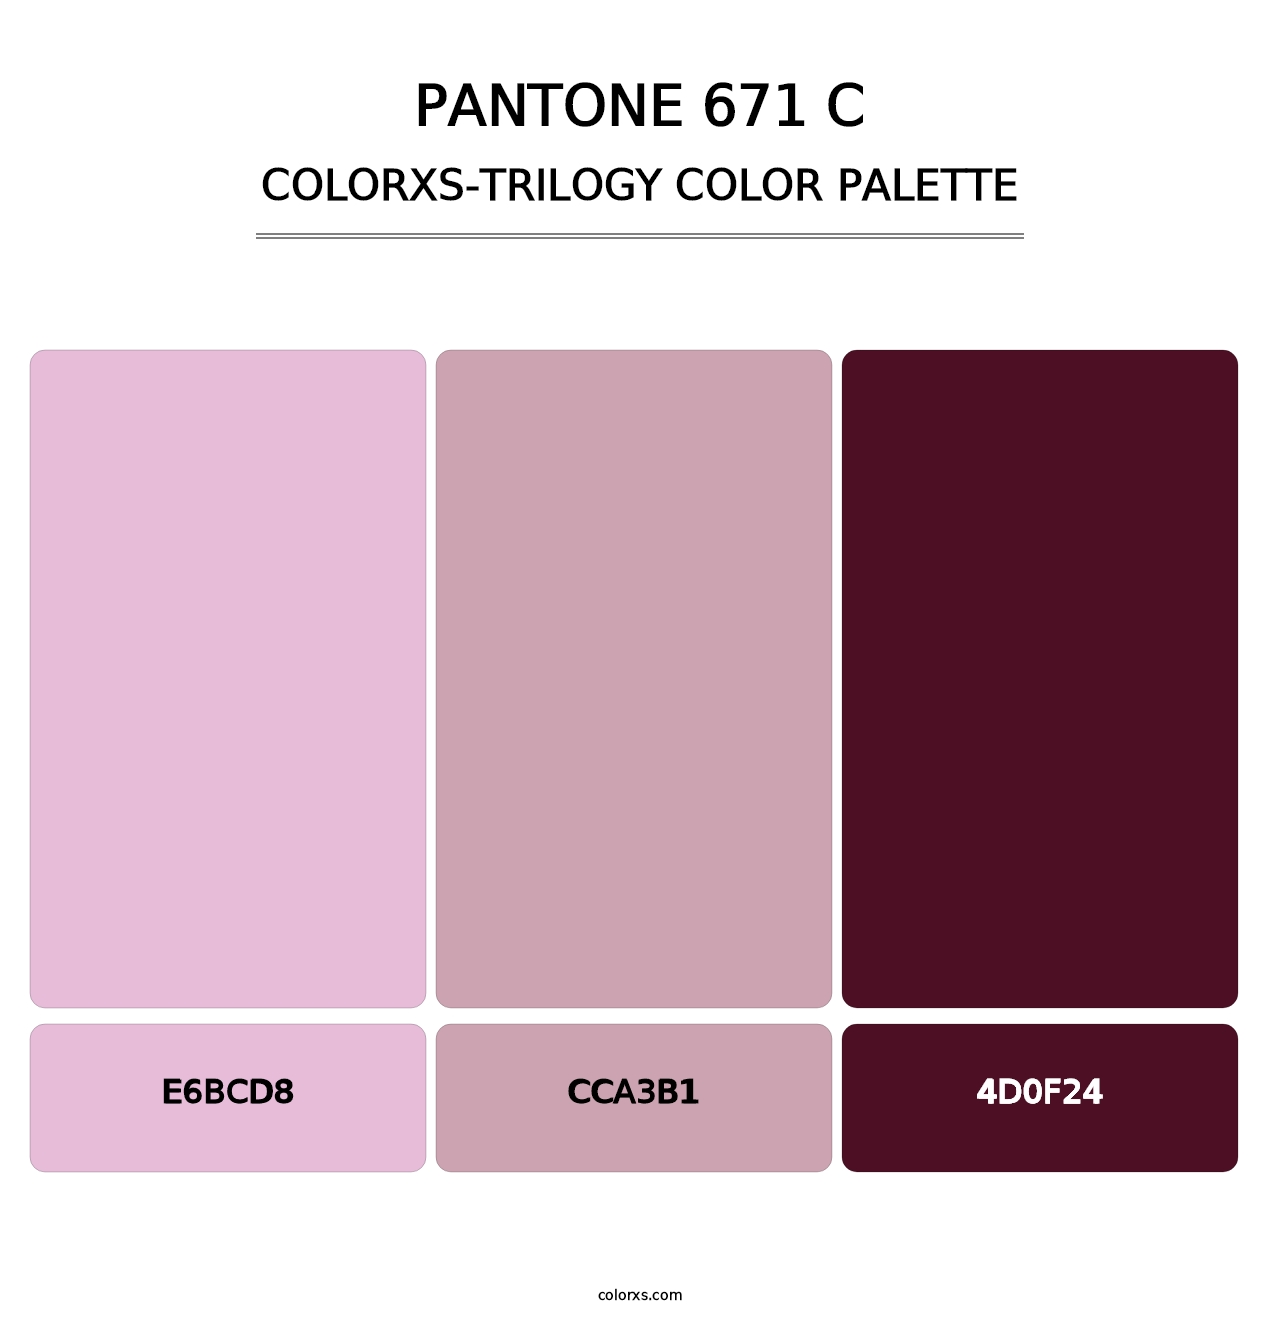 PANTONE 671 C - Colorxs Trilogy Palette